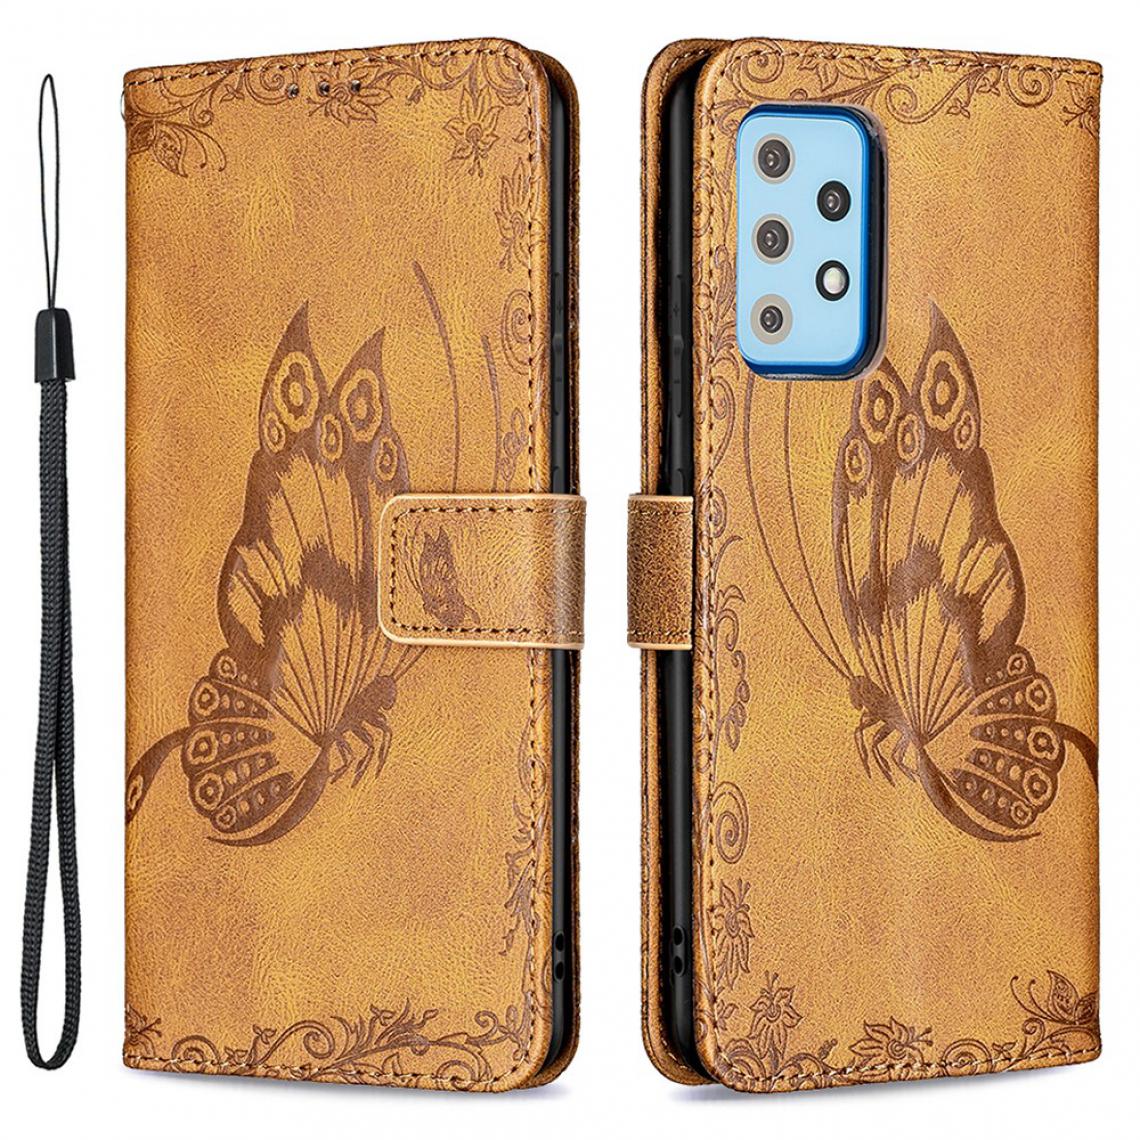 Other - Etui en PU Empreinte Papillon Fleur marron pour votre Samsung Galaxy A52 5G/4G - Coque, étui smartphone